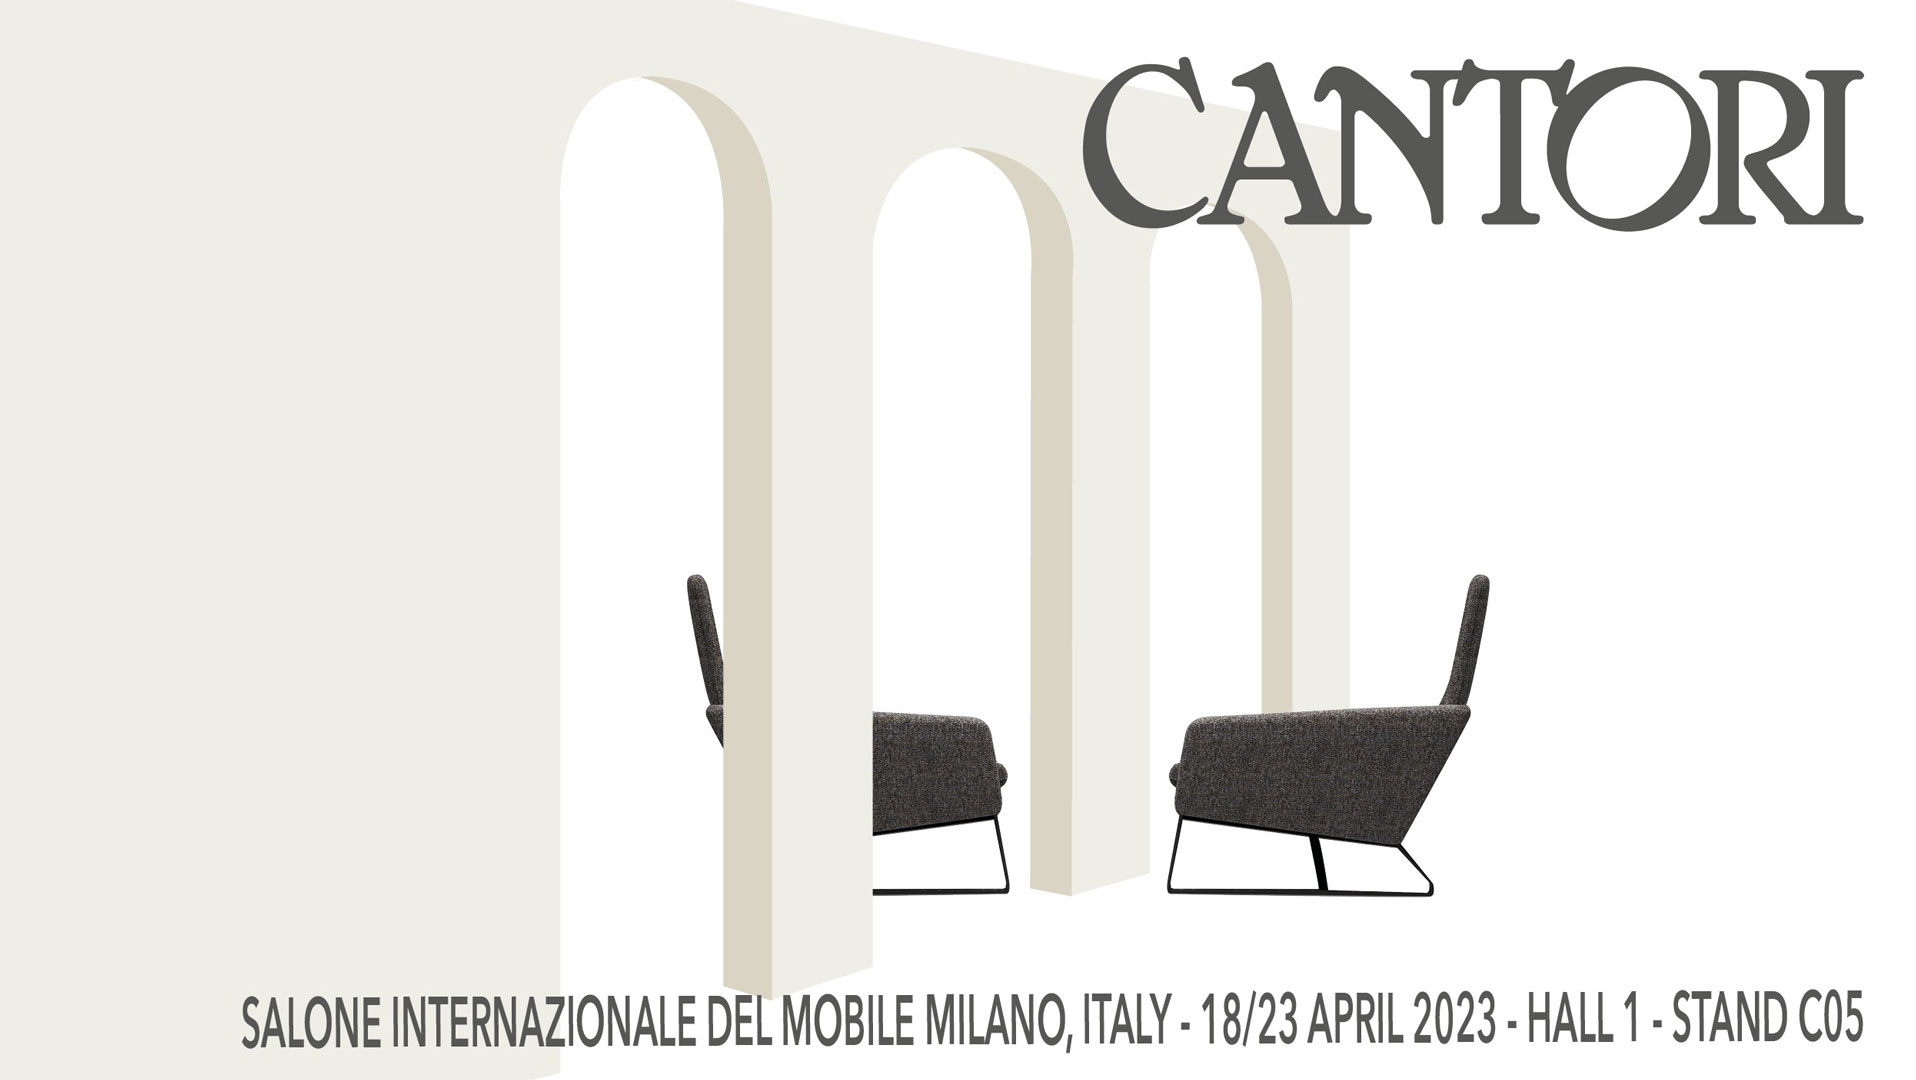  Cantori al Salone del Mobile di Milano 2023 - Cantori